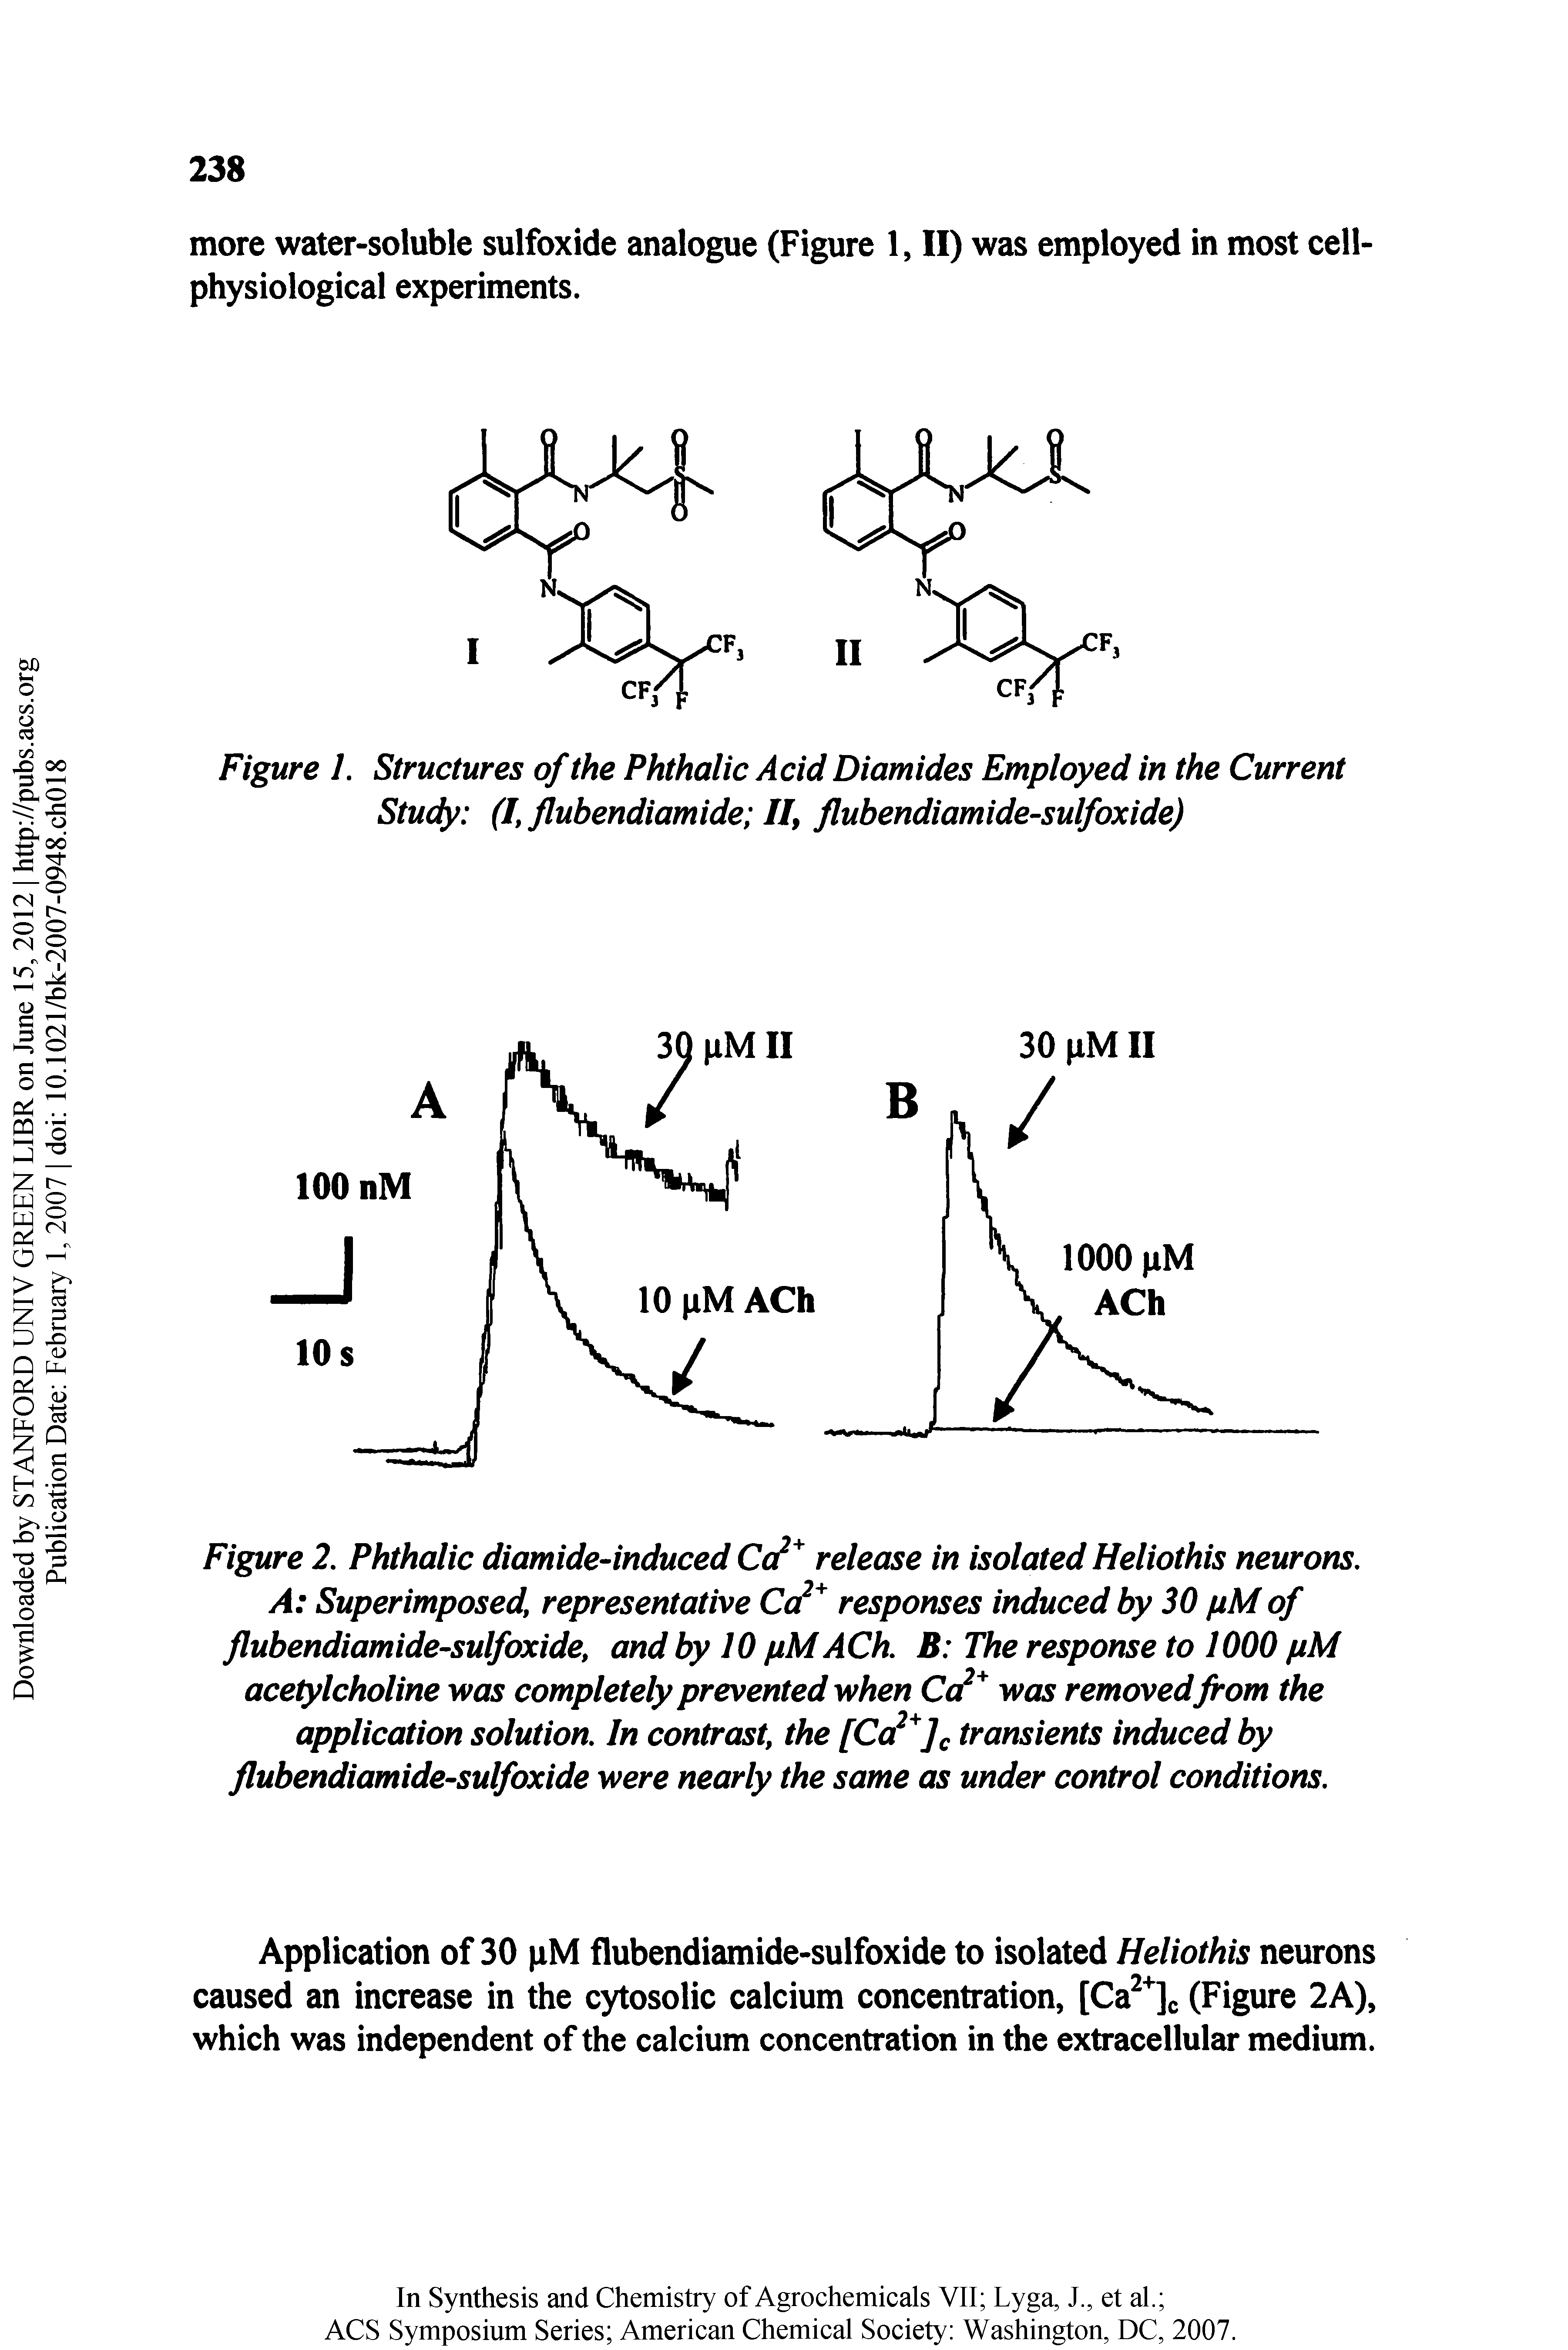 Figure I. Structures of the Phthalic Acid Diamides Employed in the Current Study (I, flubendiamide II, flubendiamide-sulfoxide)...